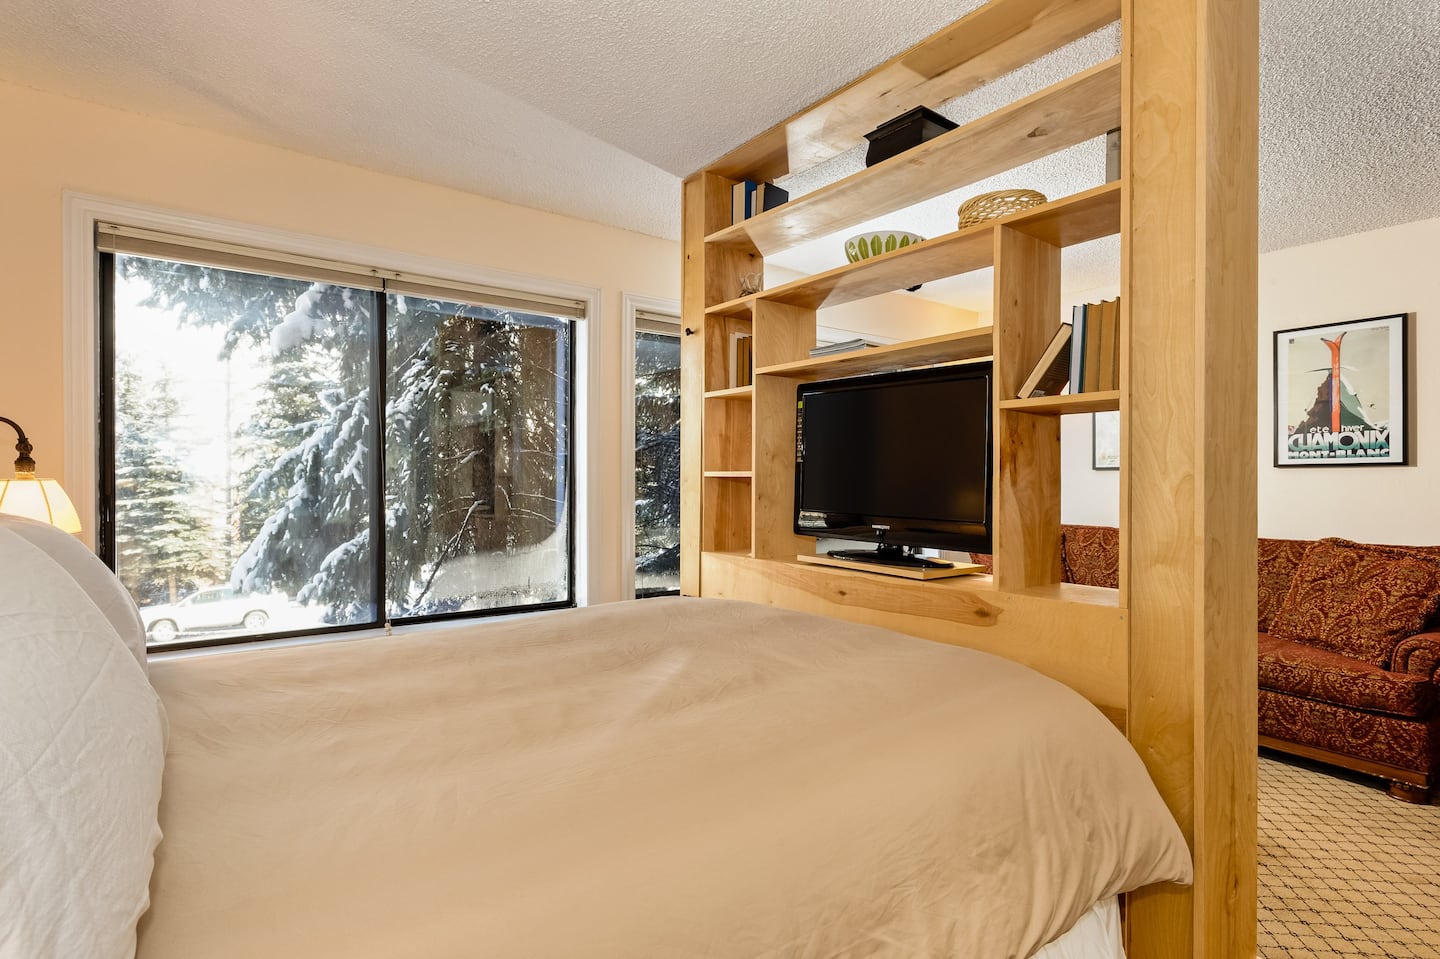 Studio Condo Airbnb in Aspen